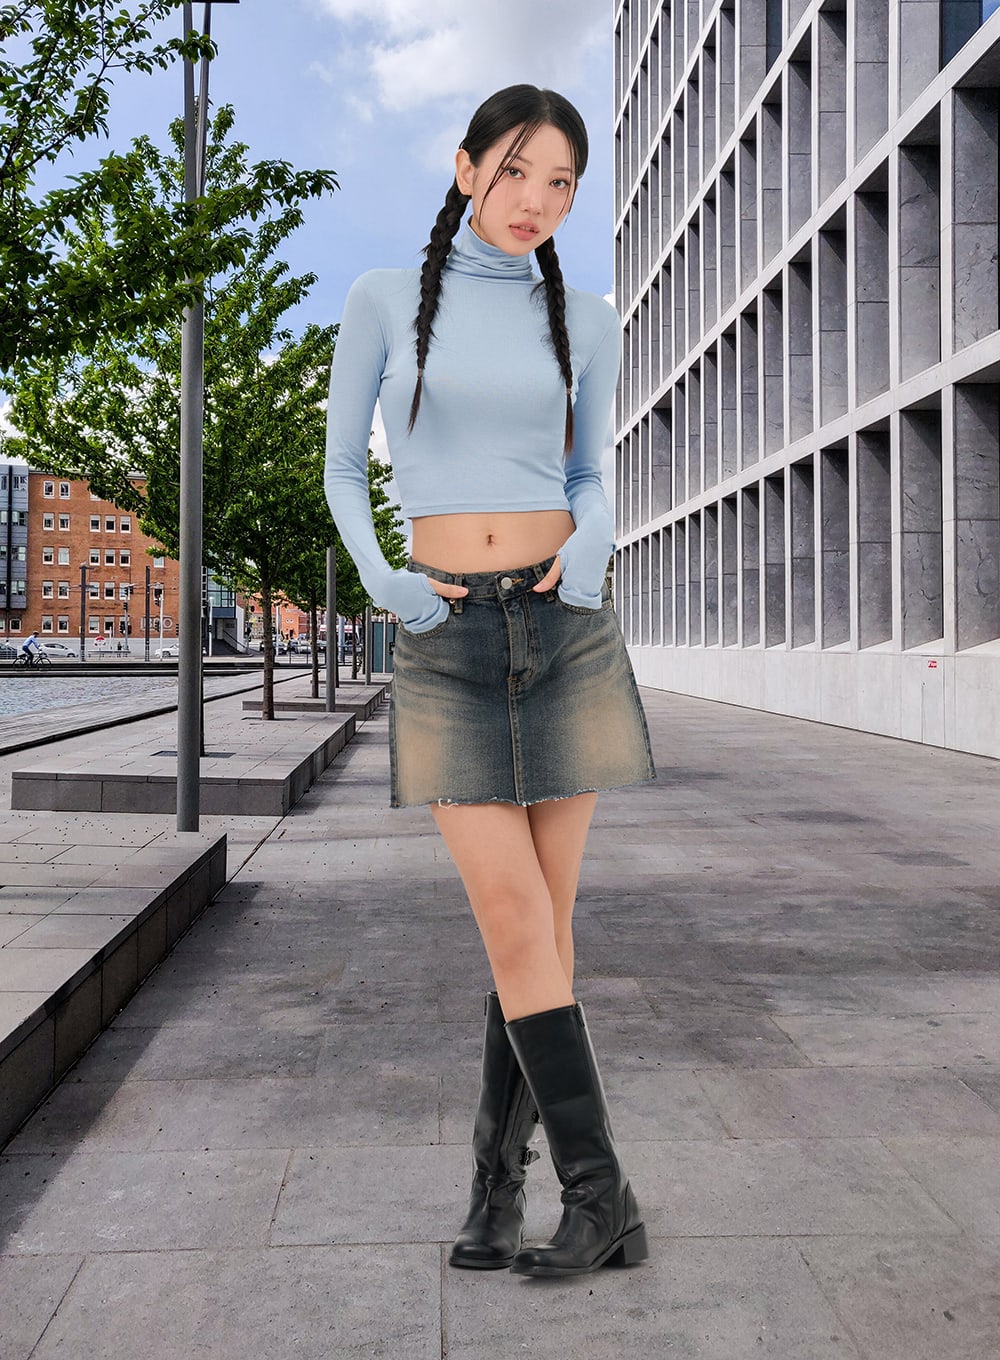 Kira Midi Skirt - Front Split Denim Skirt in Light Blue Wash | Showpo USA